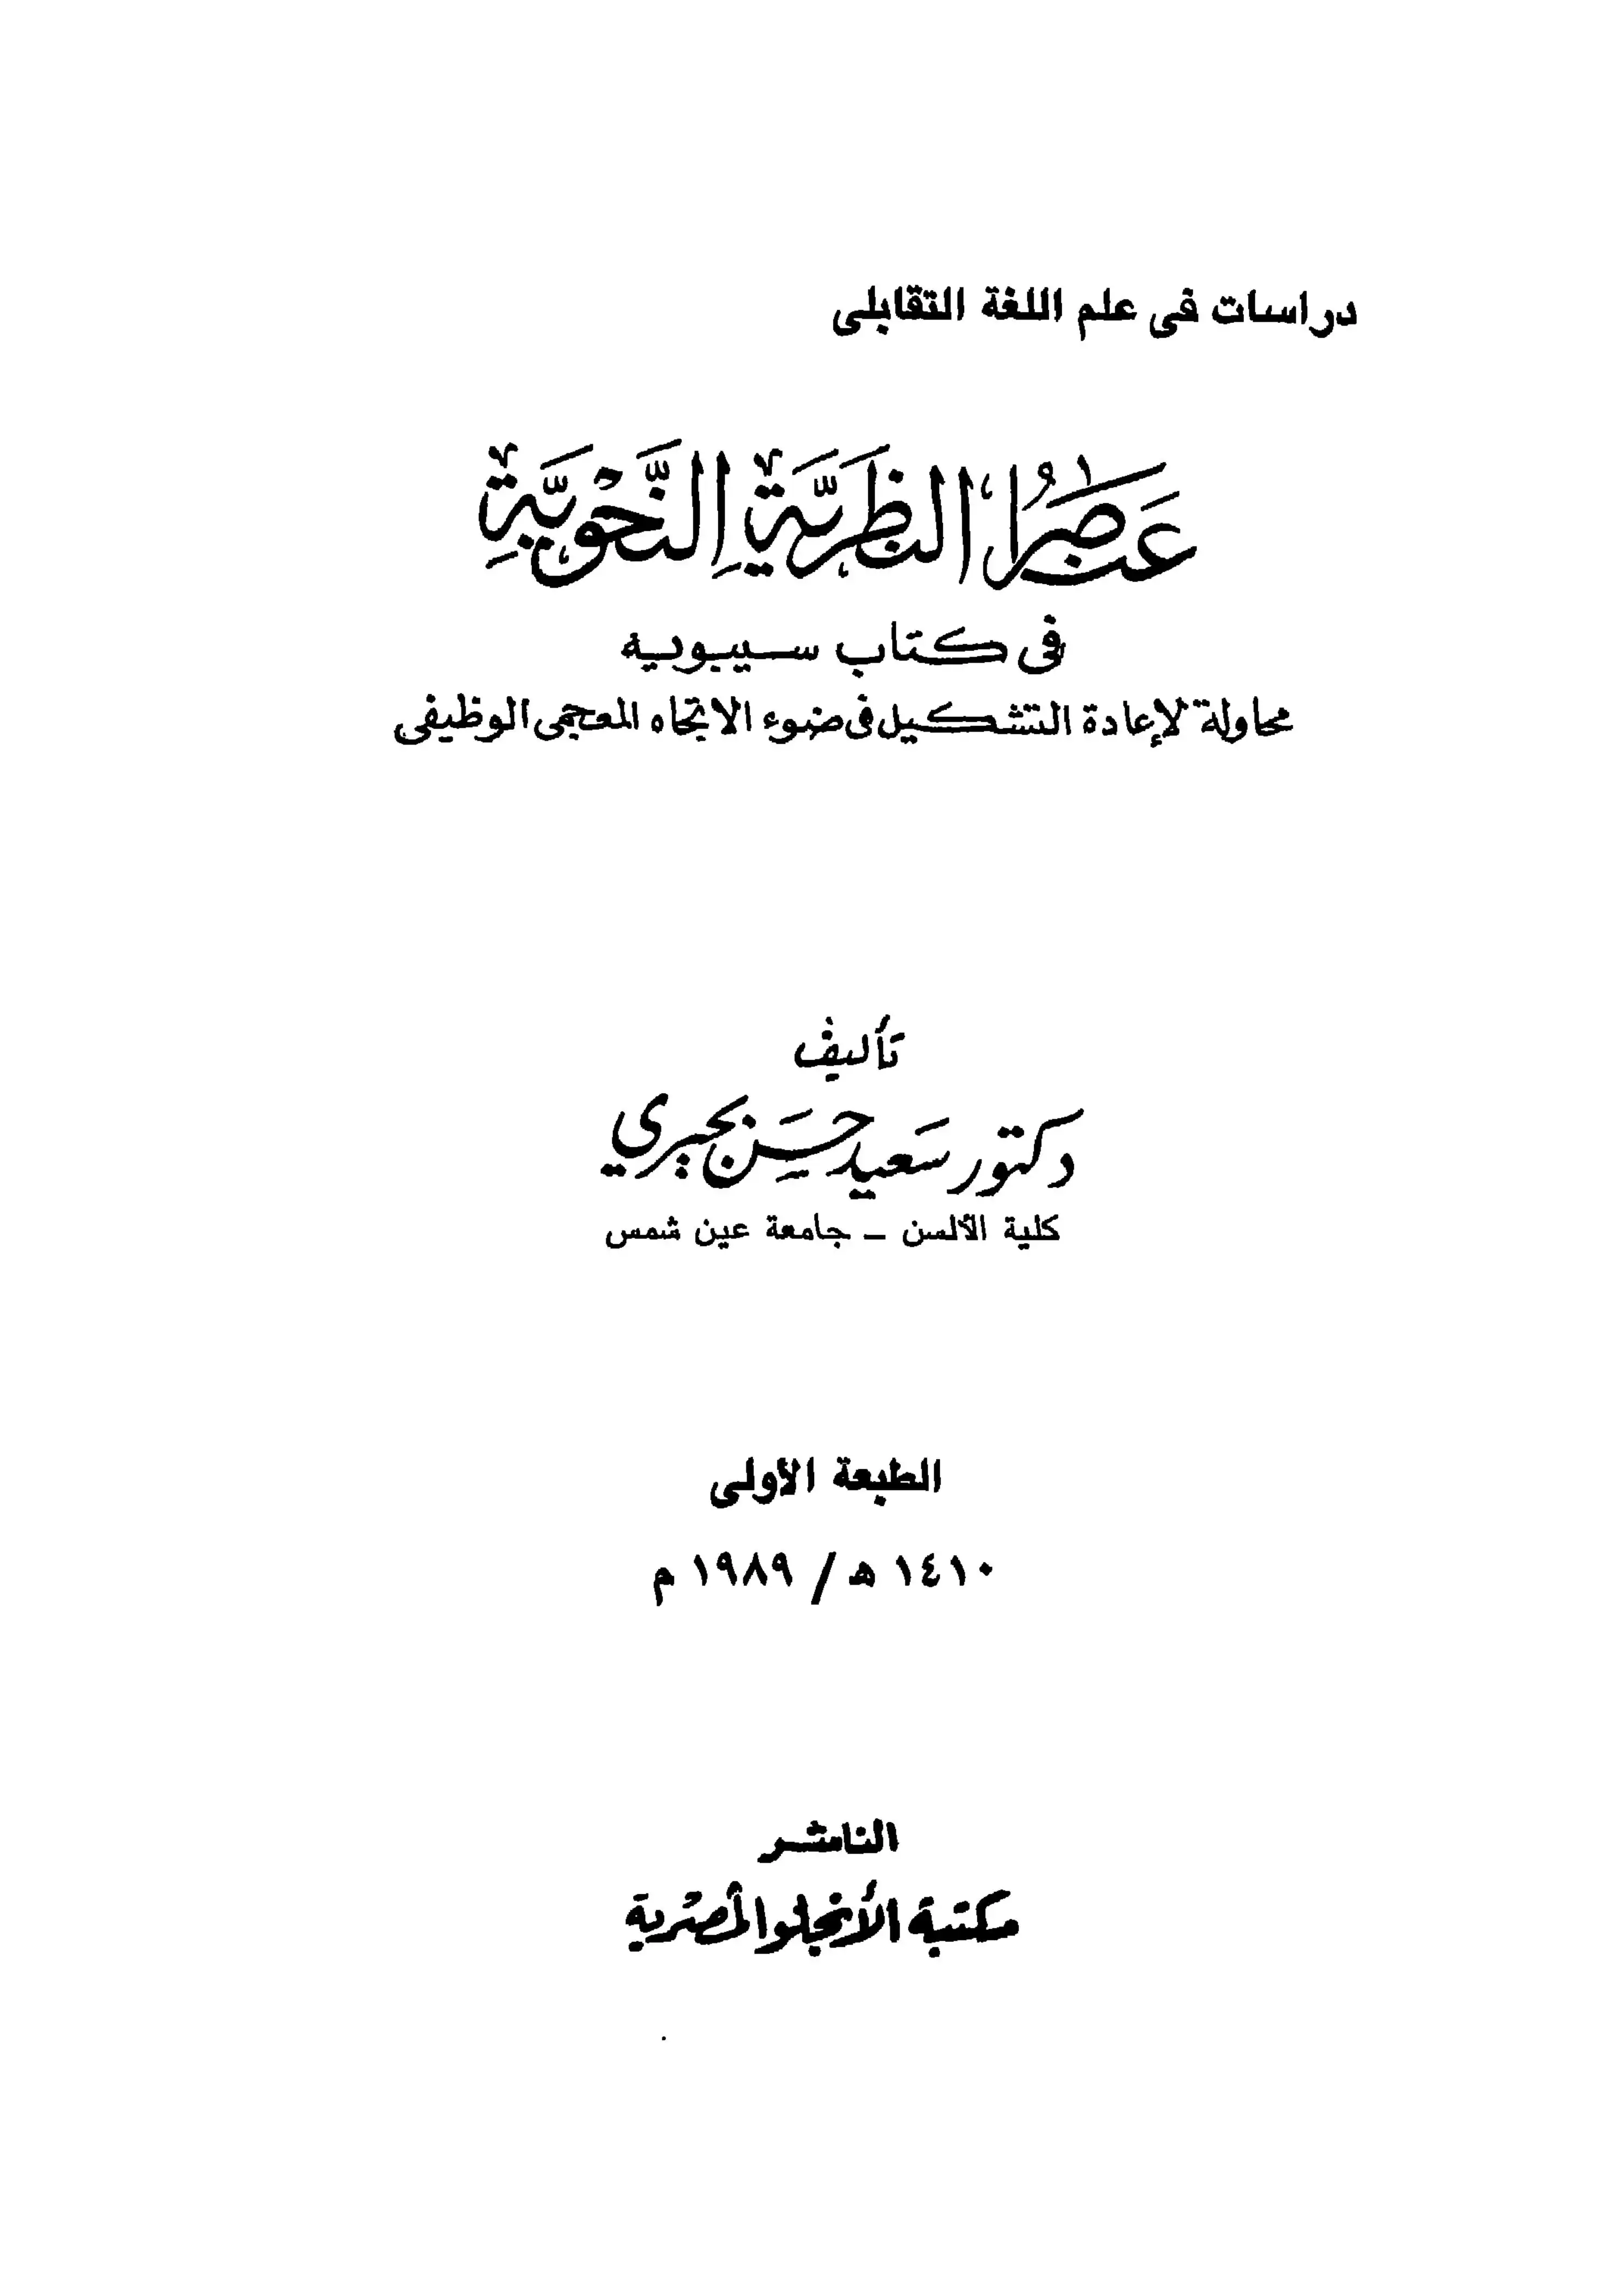 شرح كتاب سيبويه لعلي بن عيسى الرماني